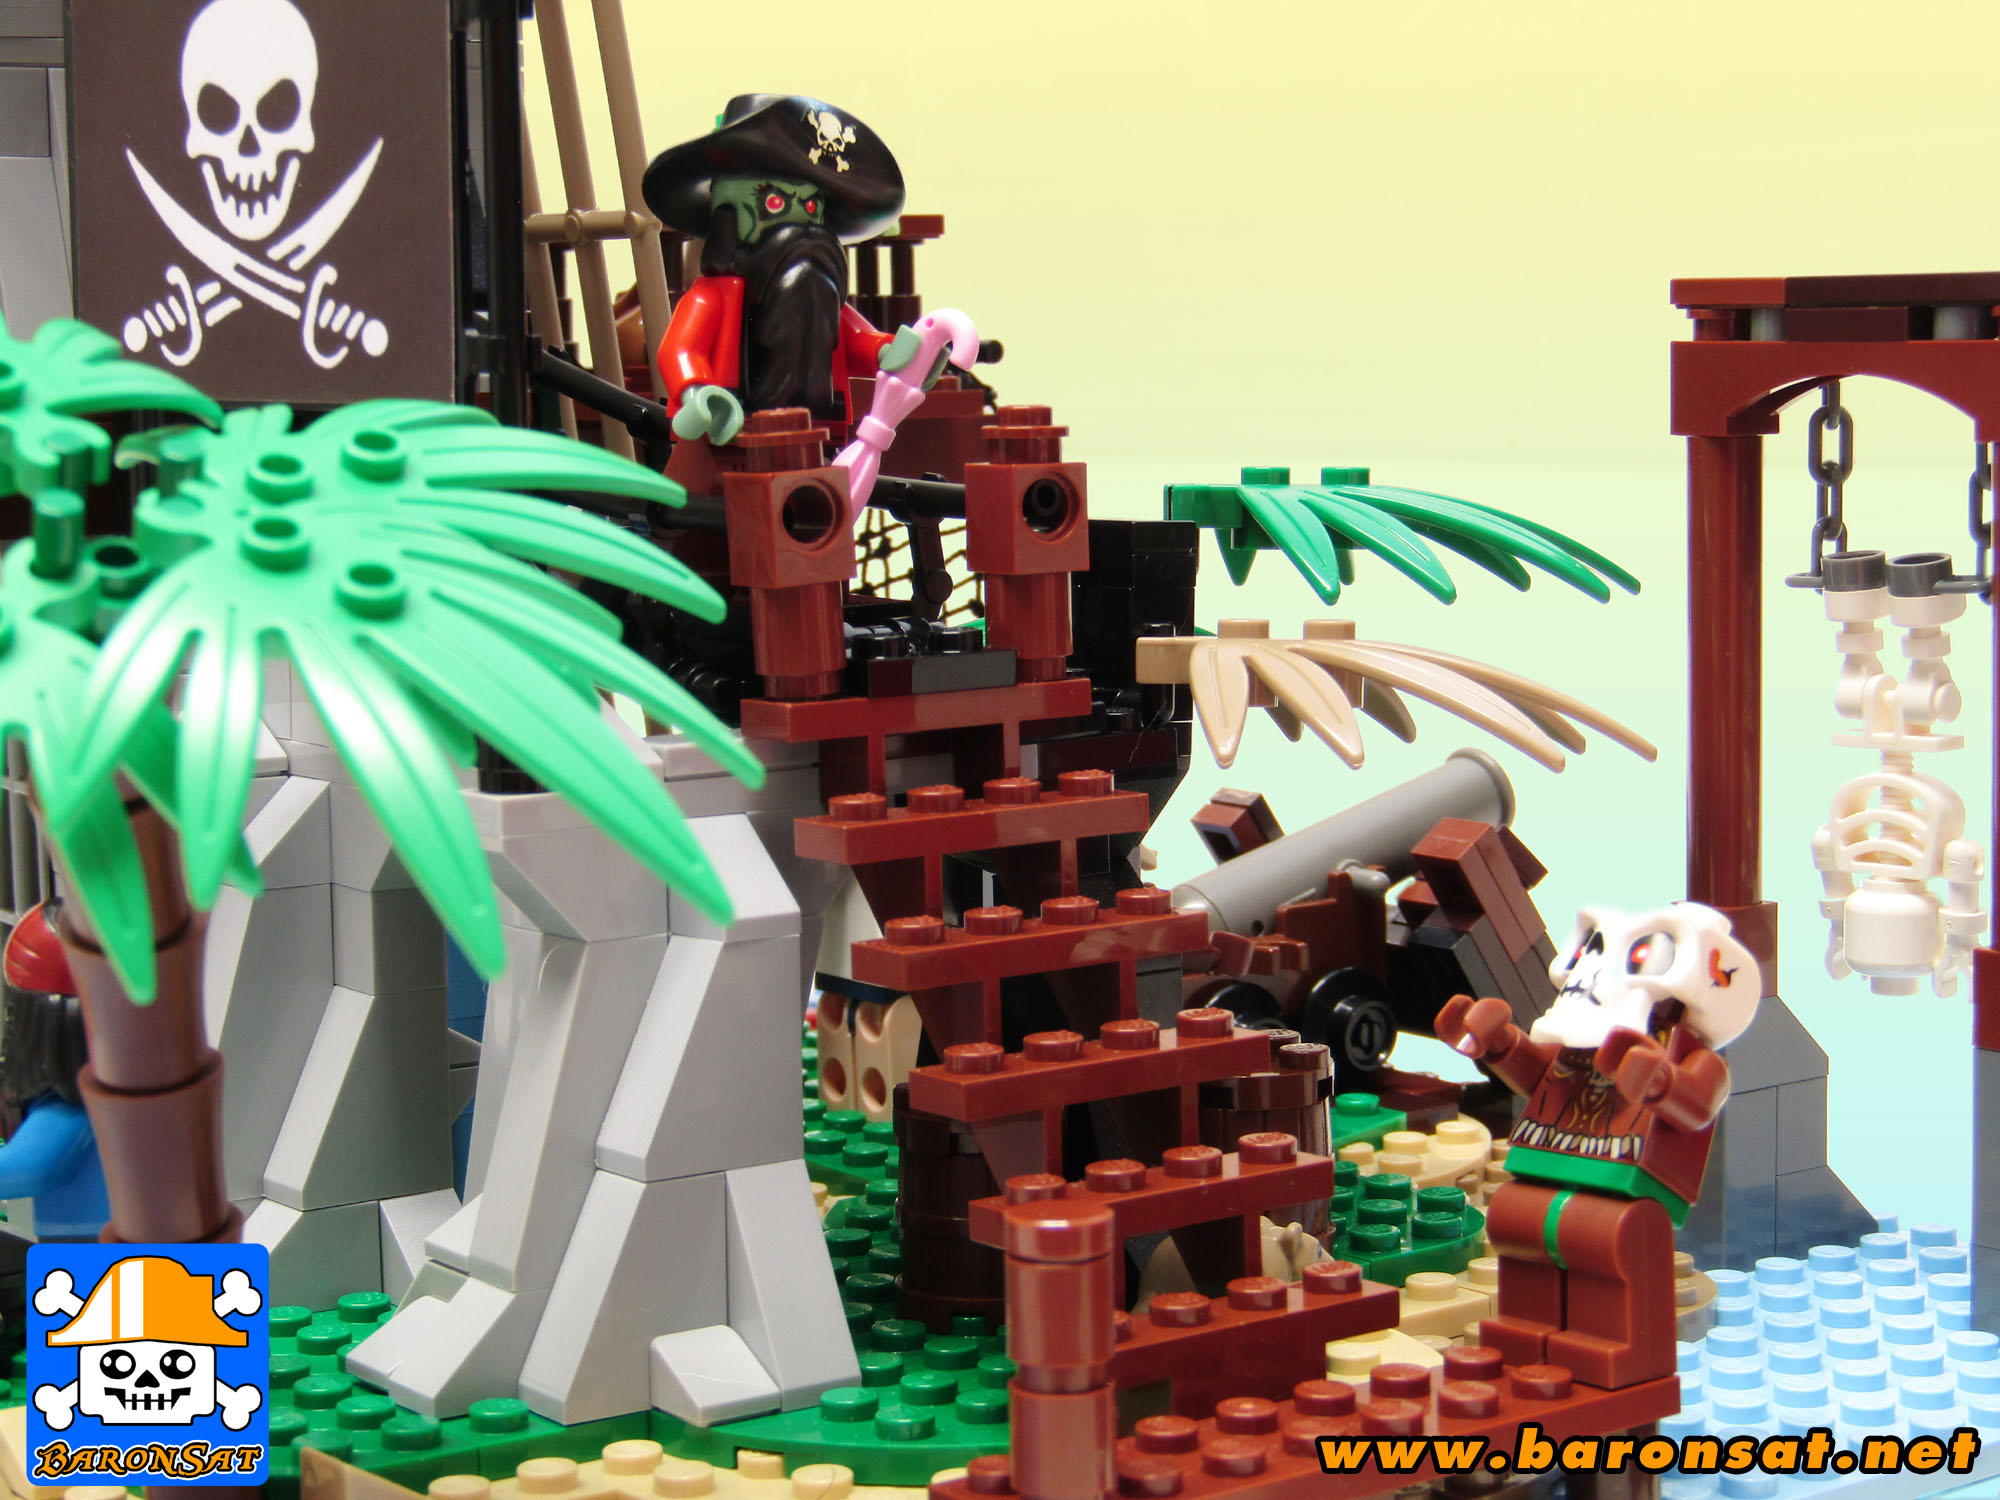 Lego Lego moc 6270 Forbidden Island Pirates